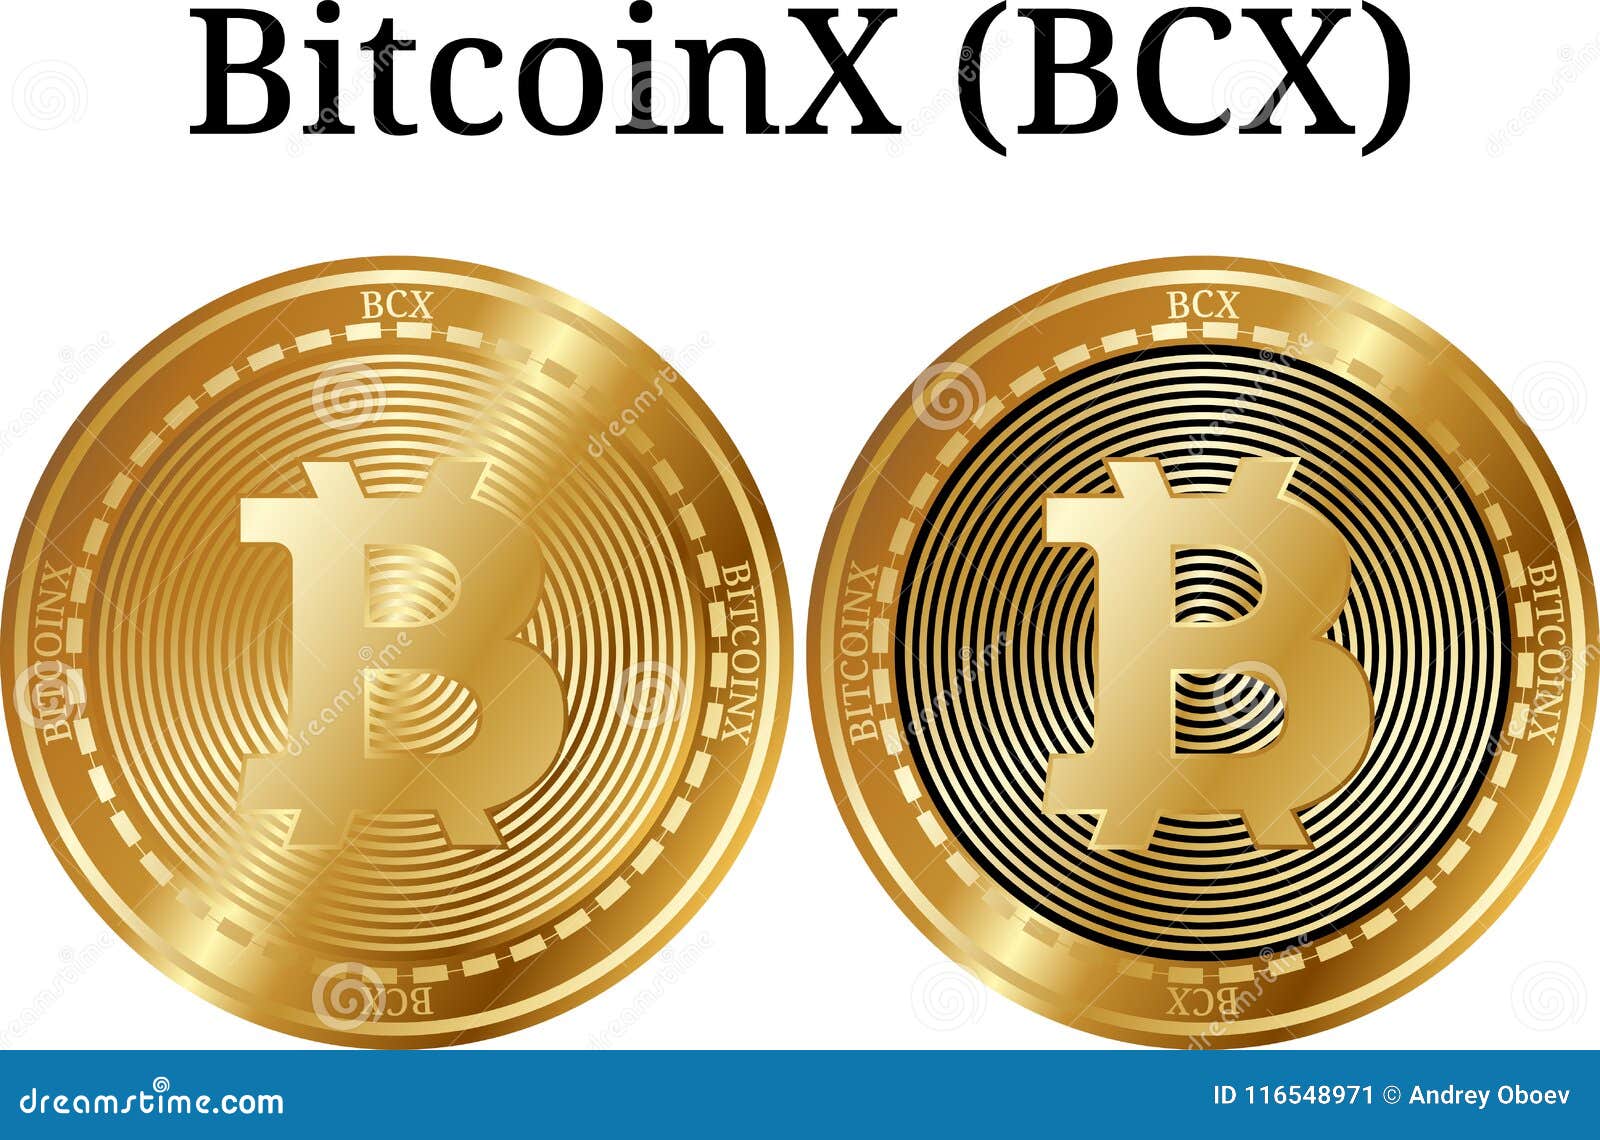 bcx bitcoin